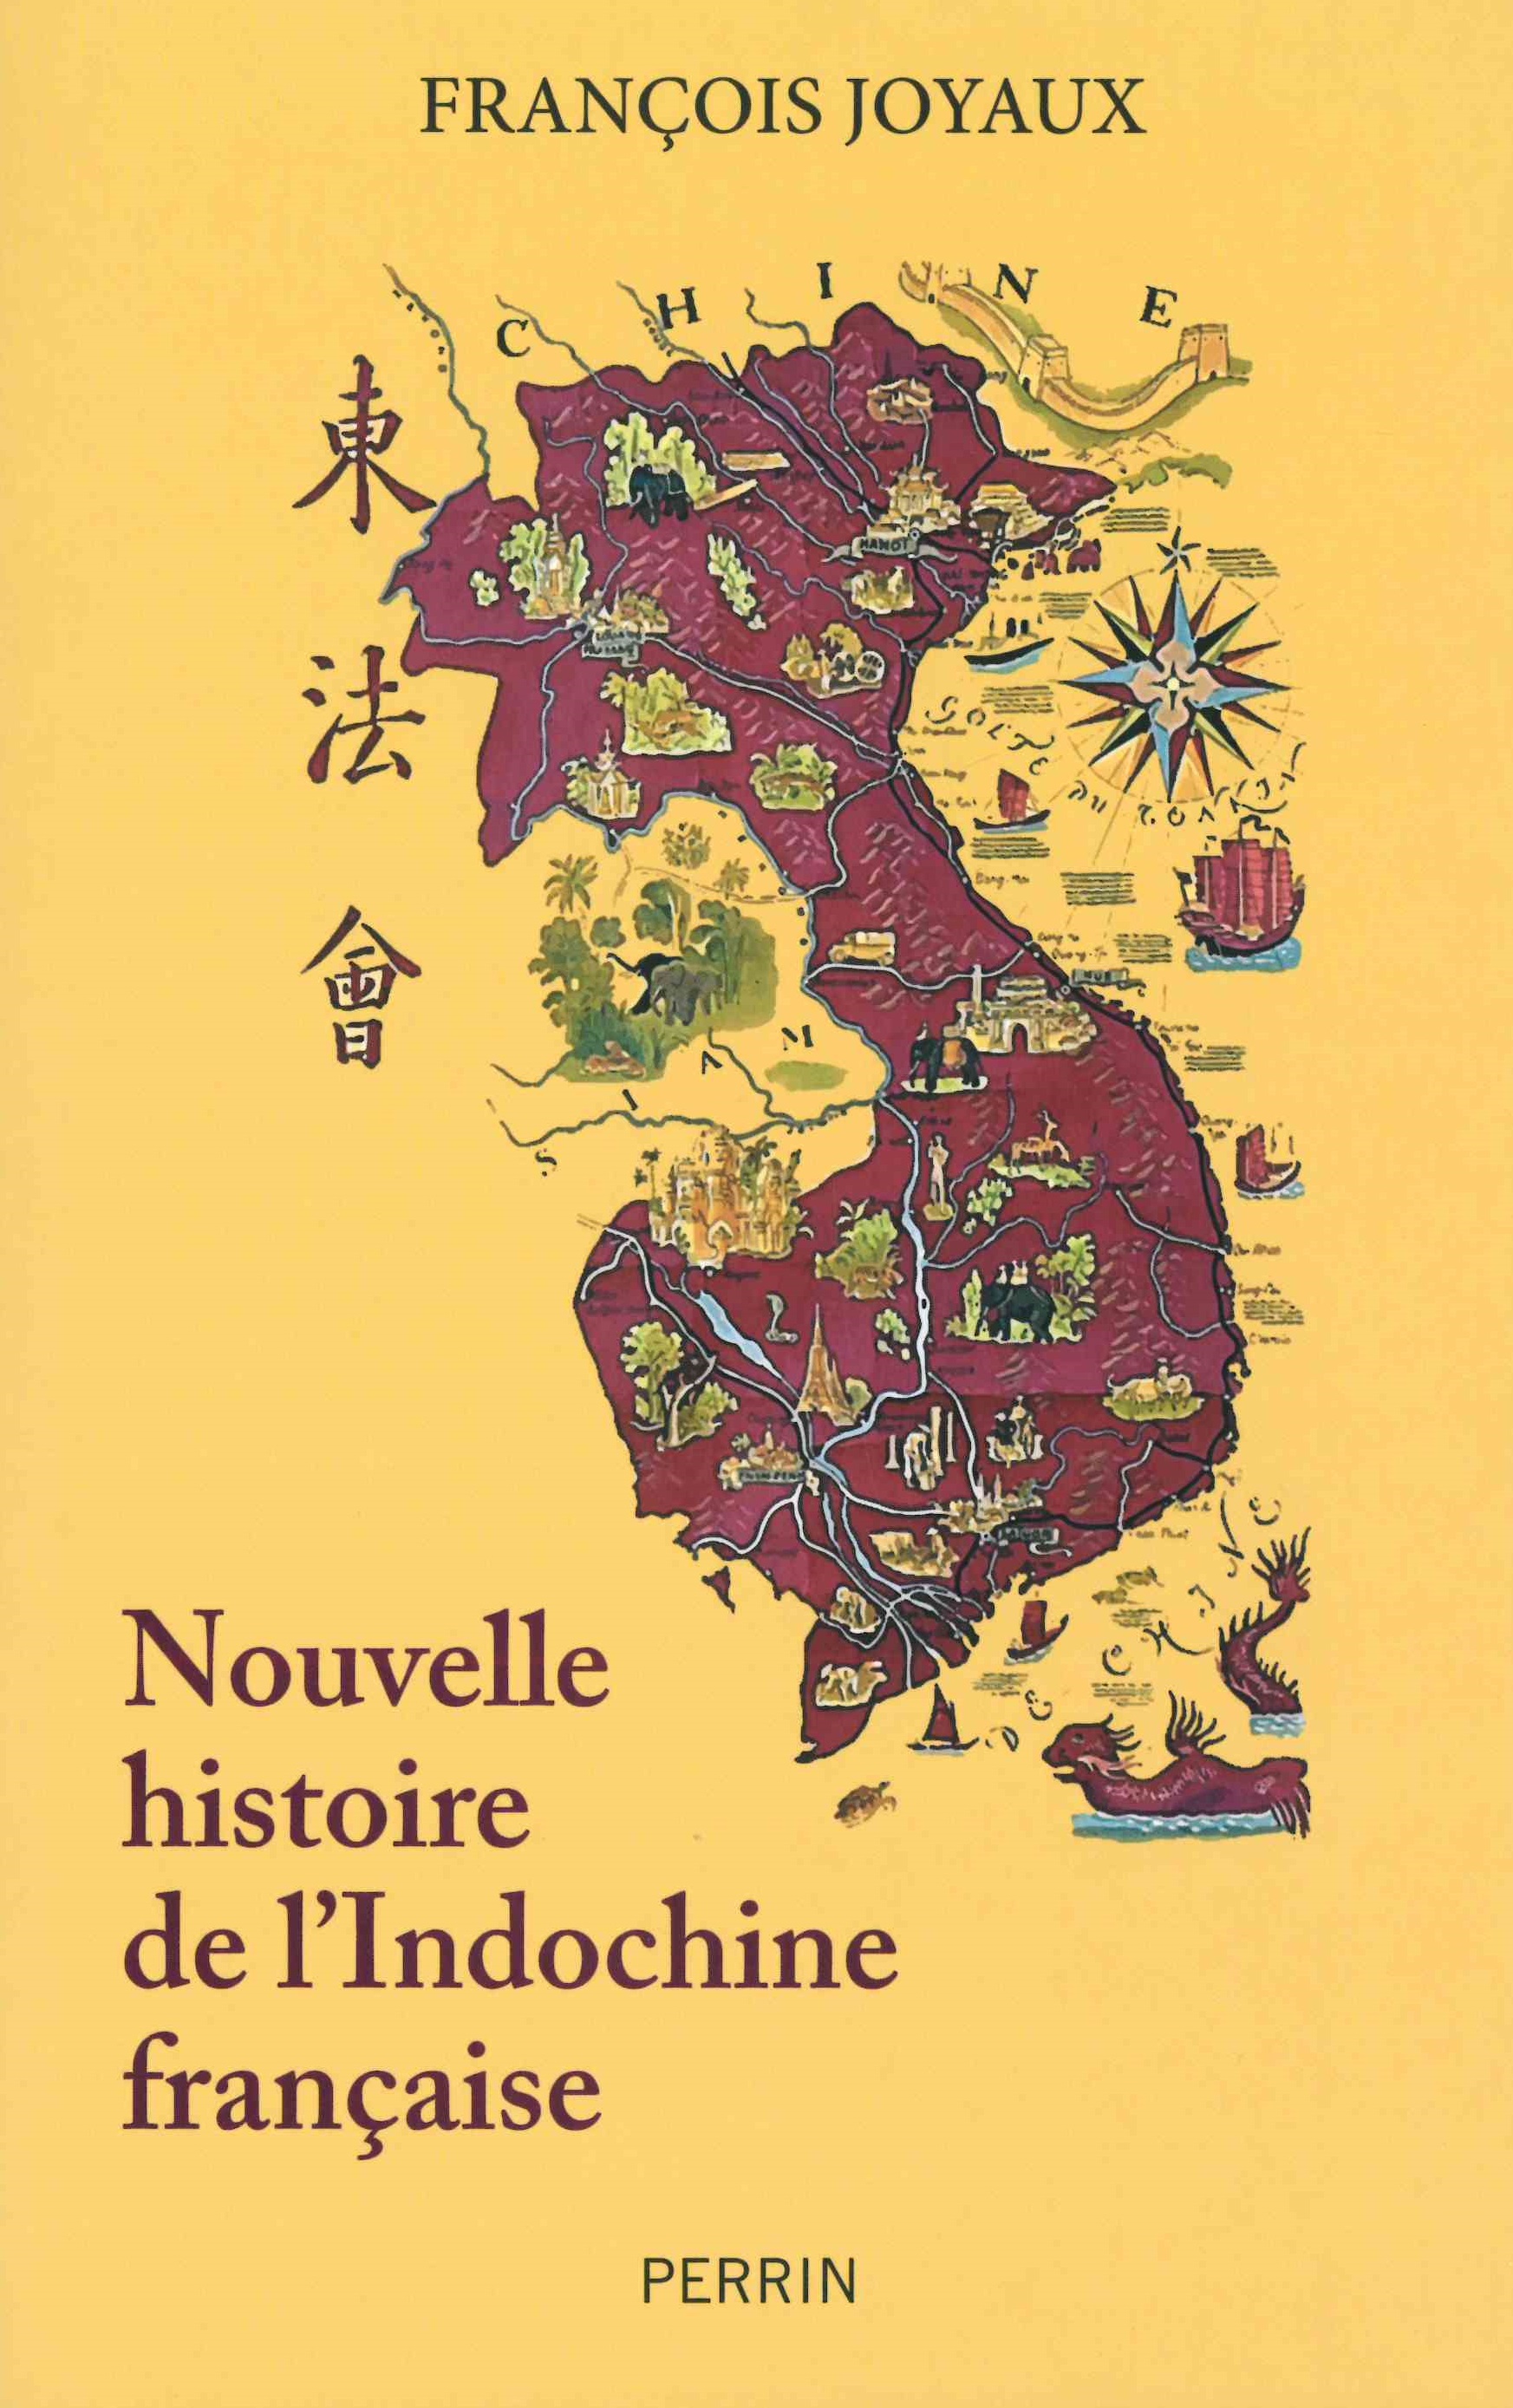 Joyaux (François), Nouvelle histoire de l’Indochine française